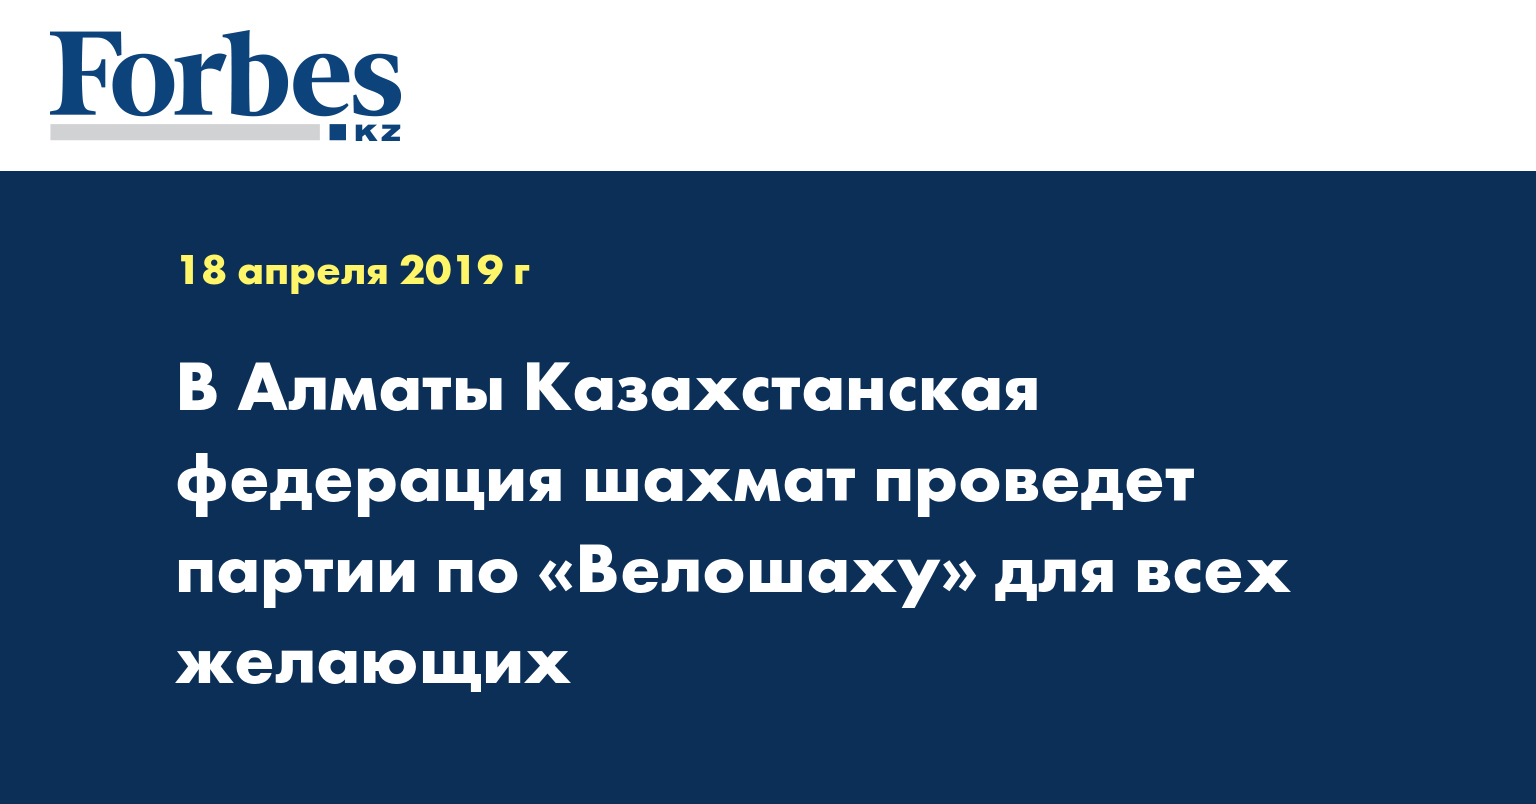 В Алматы Казахстанская федерация шахмат проведет партии по «Велошаху» для всех желающих